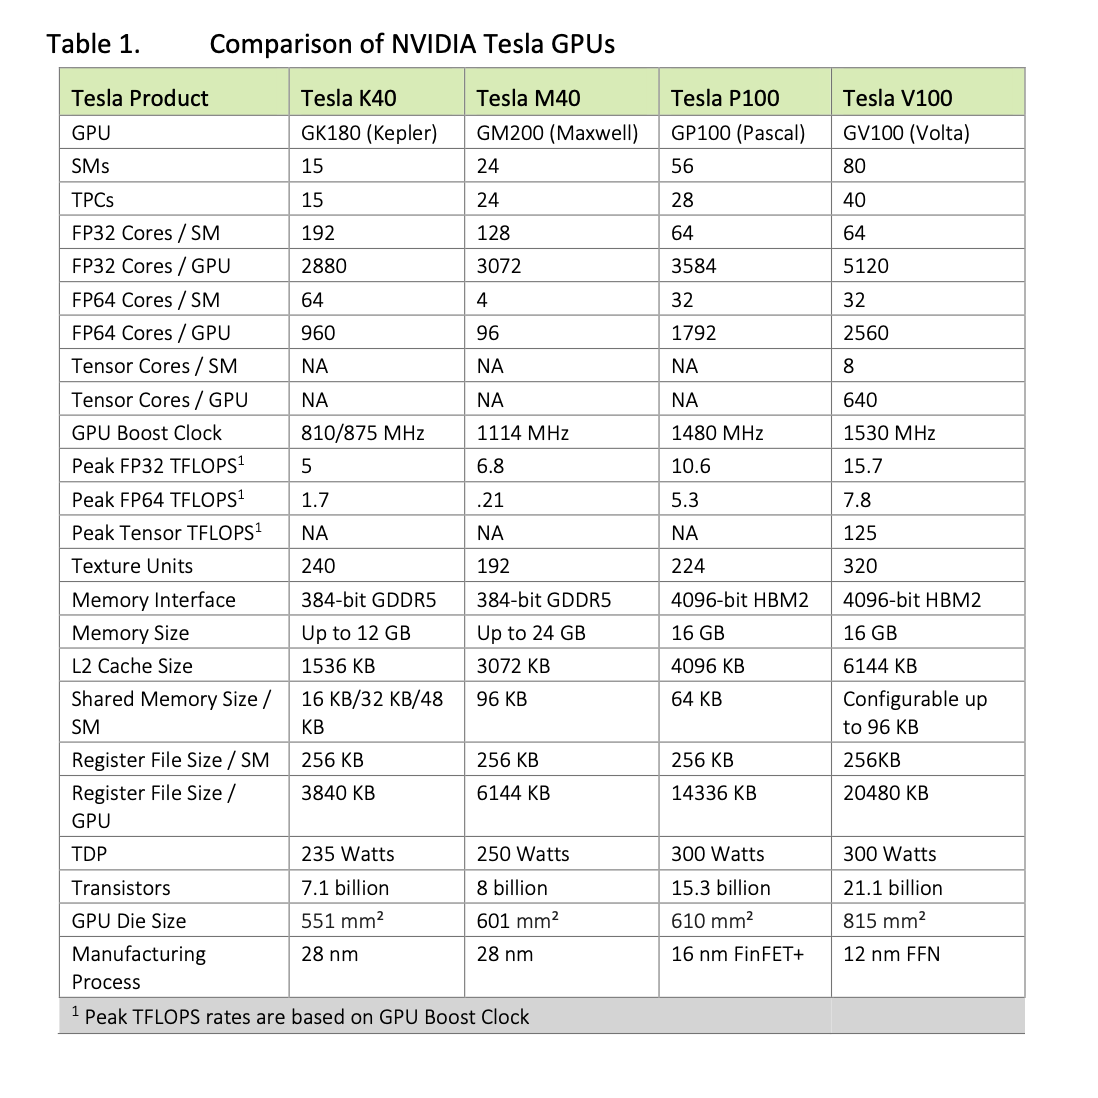 Comparison of Nvidia Tesla GPUs